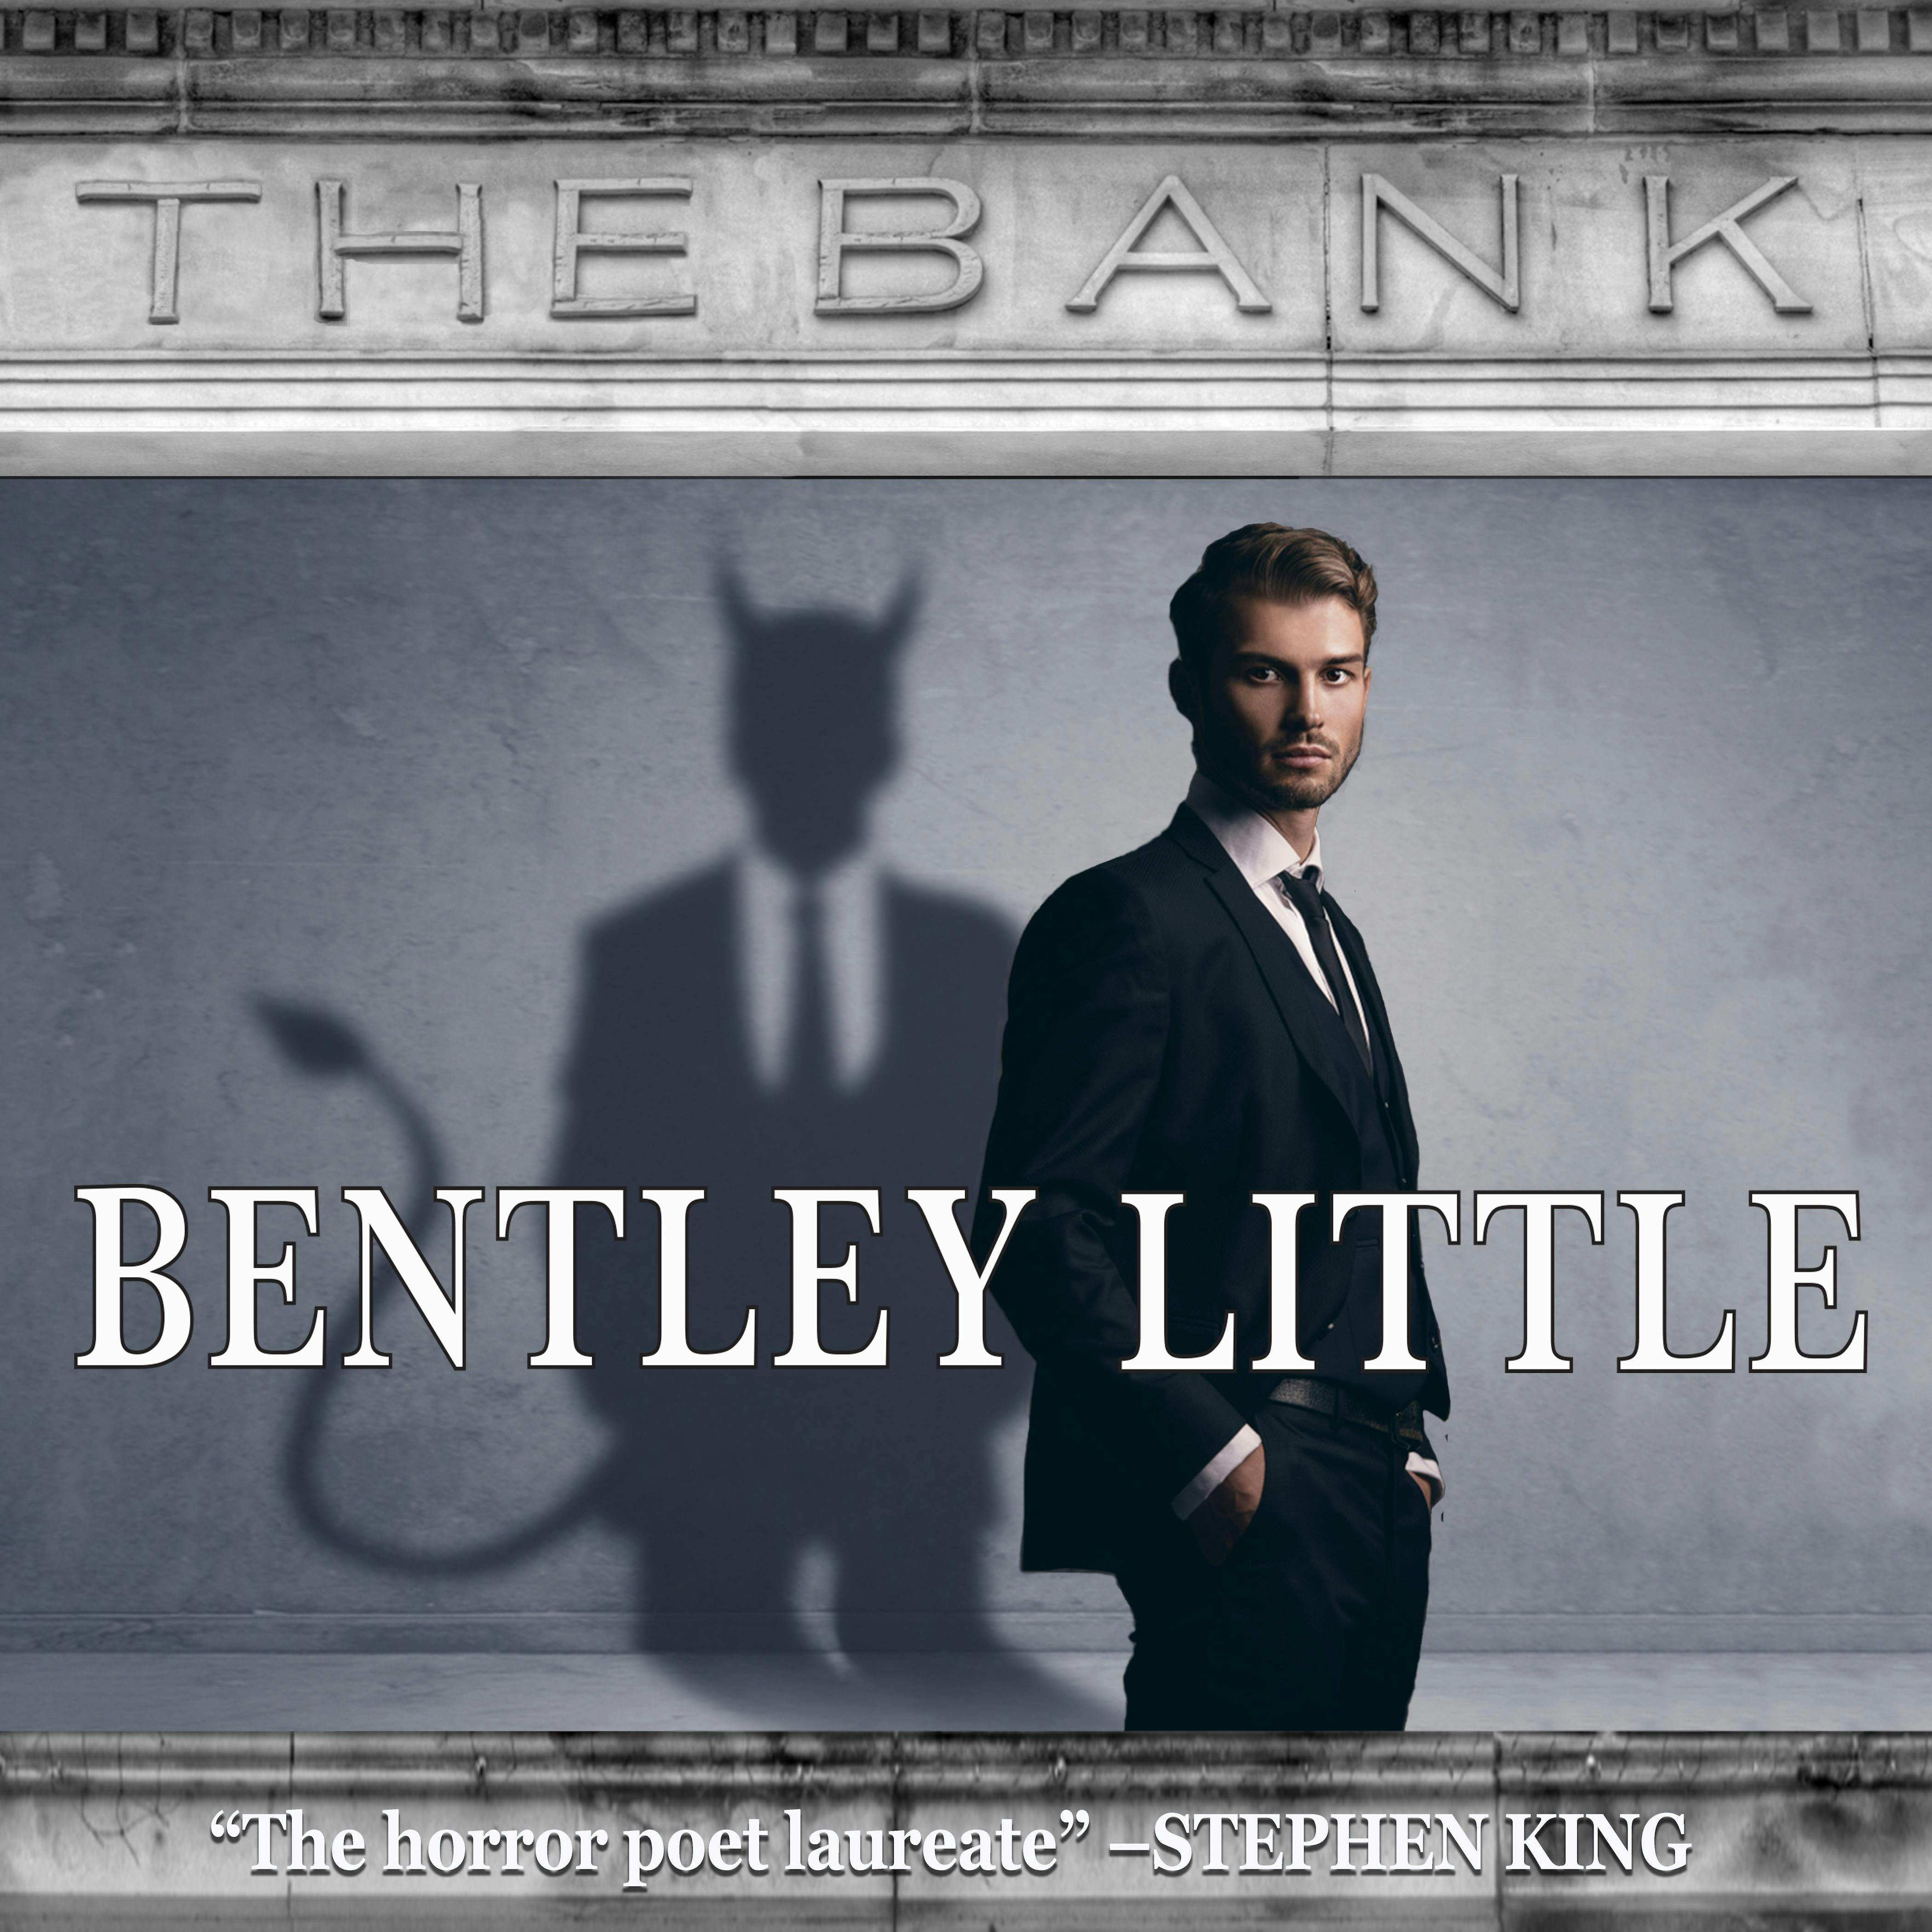 The Bank - Bentley Little